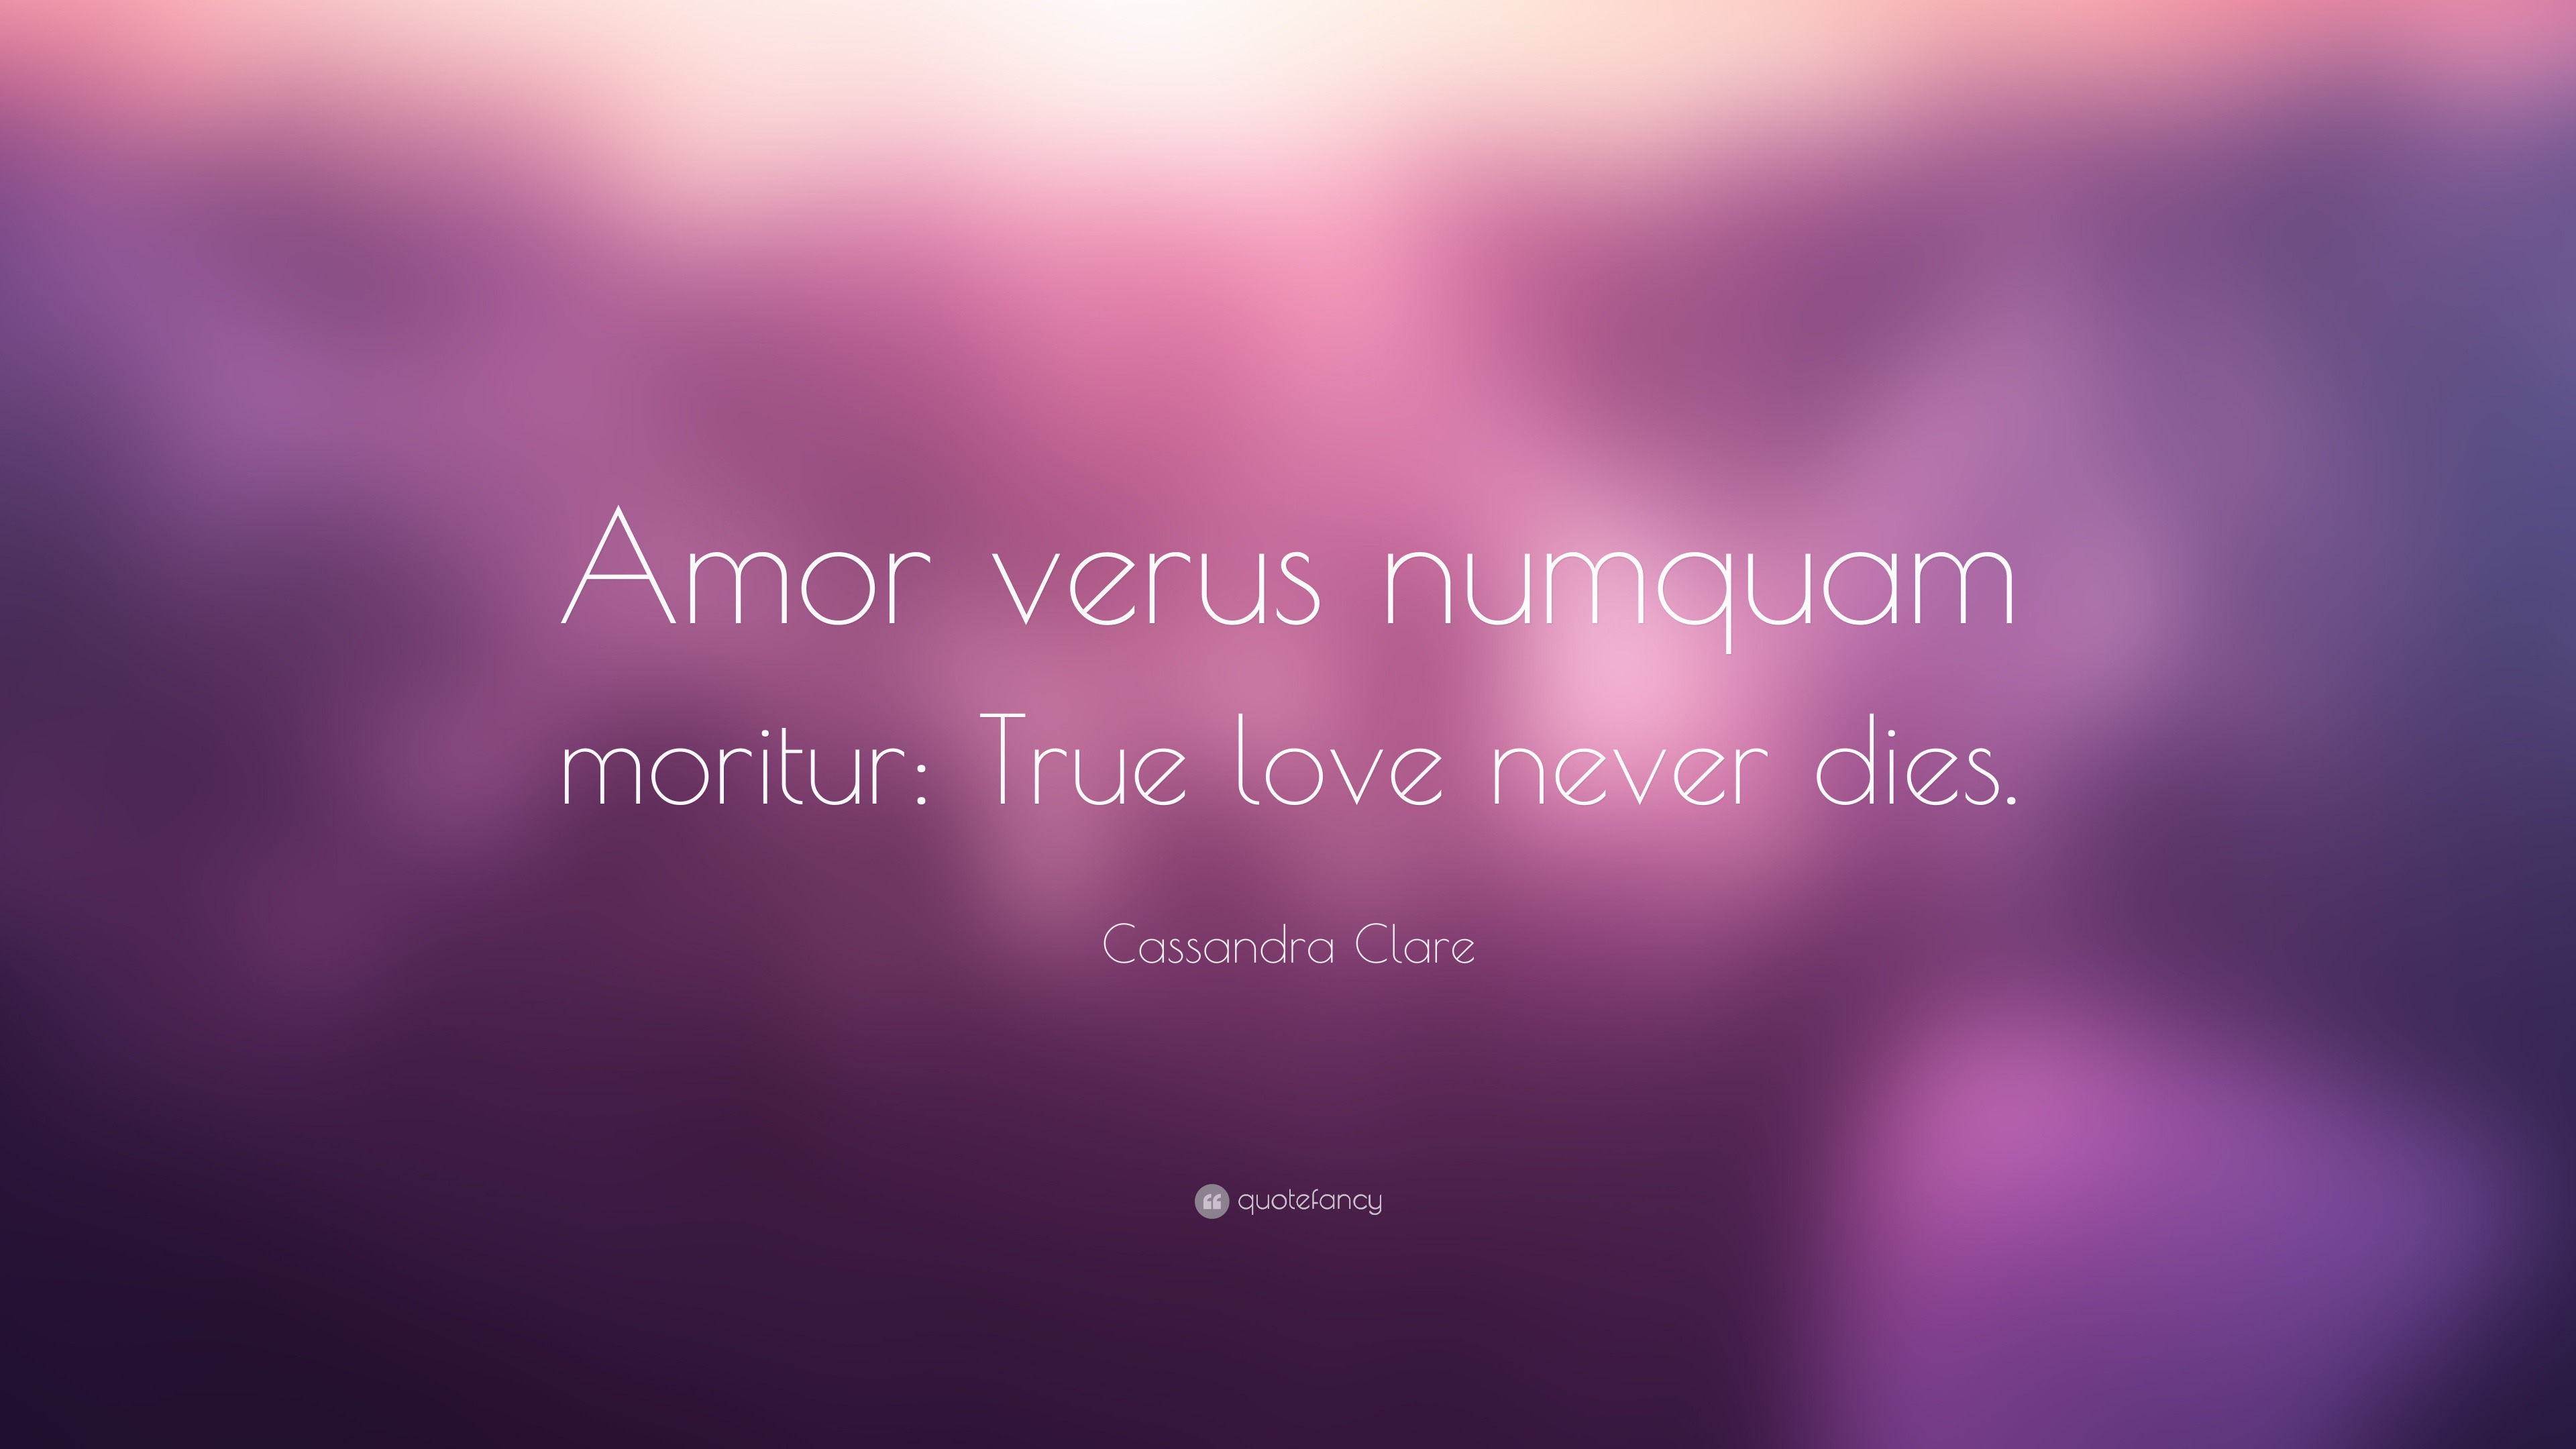 Cassandra Clare Quote “Amor verus numquam moritur True love never s ”